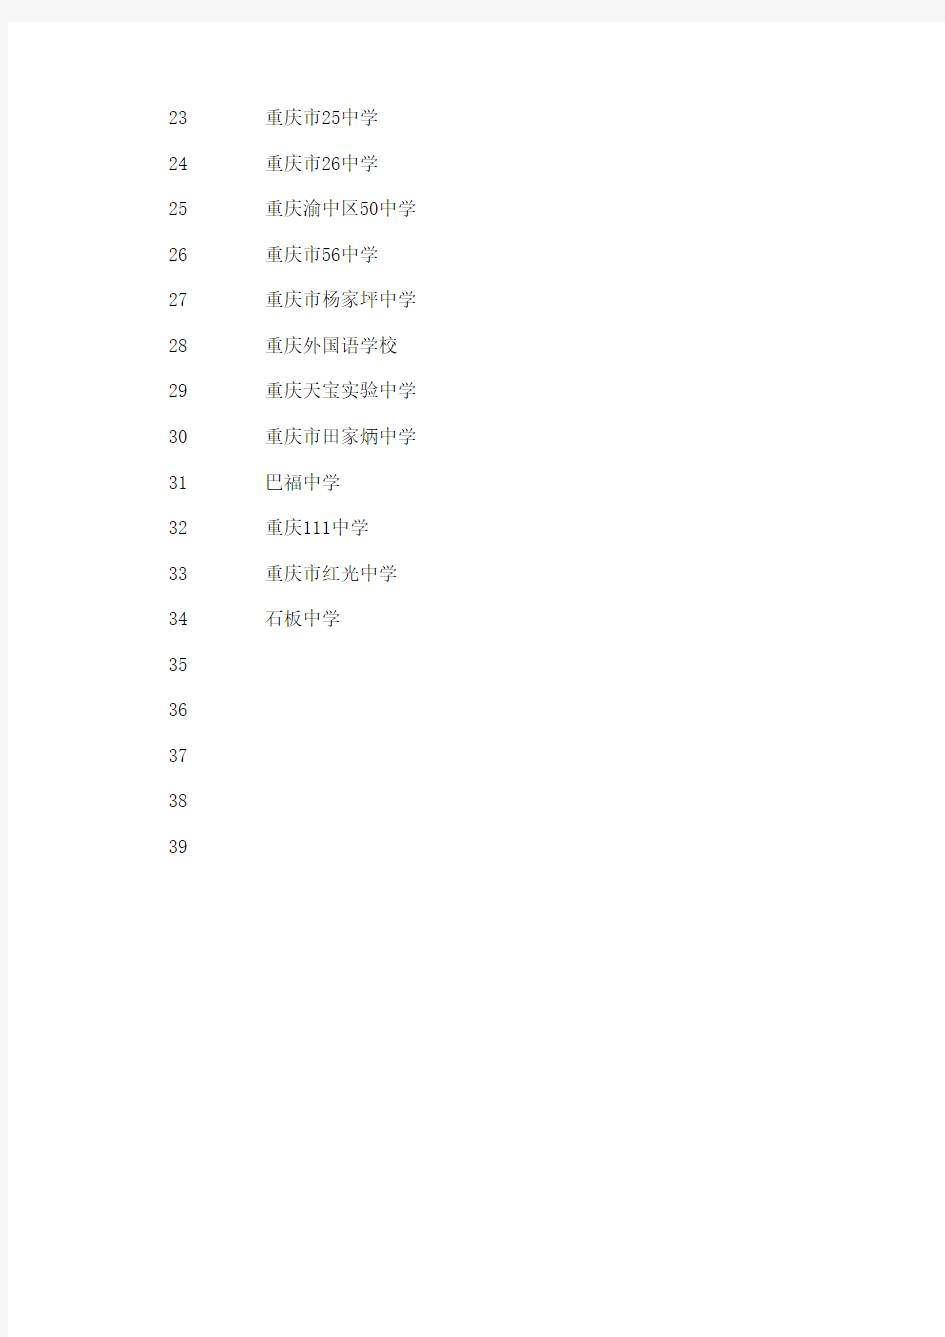 重庆所有学校名单